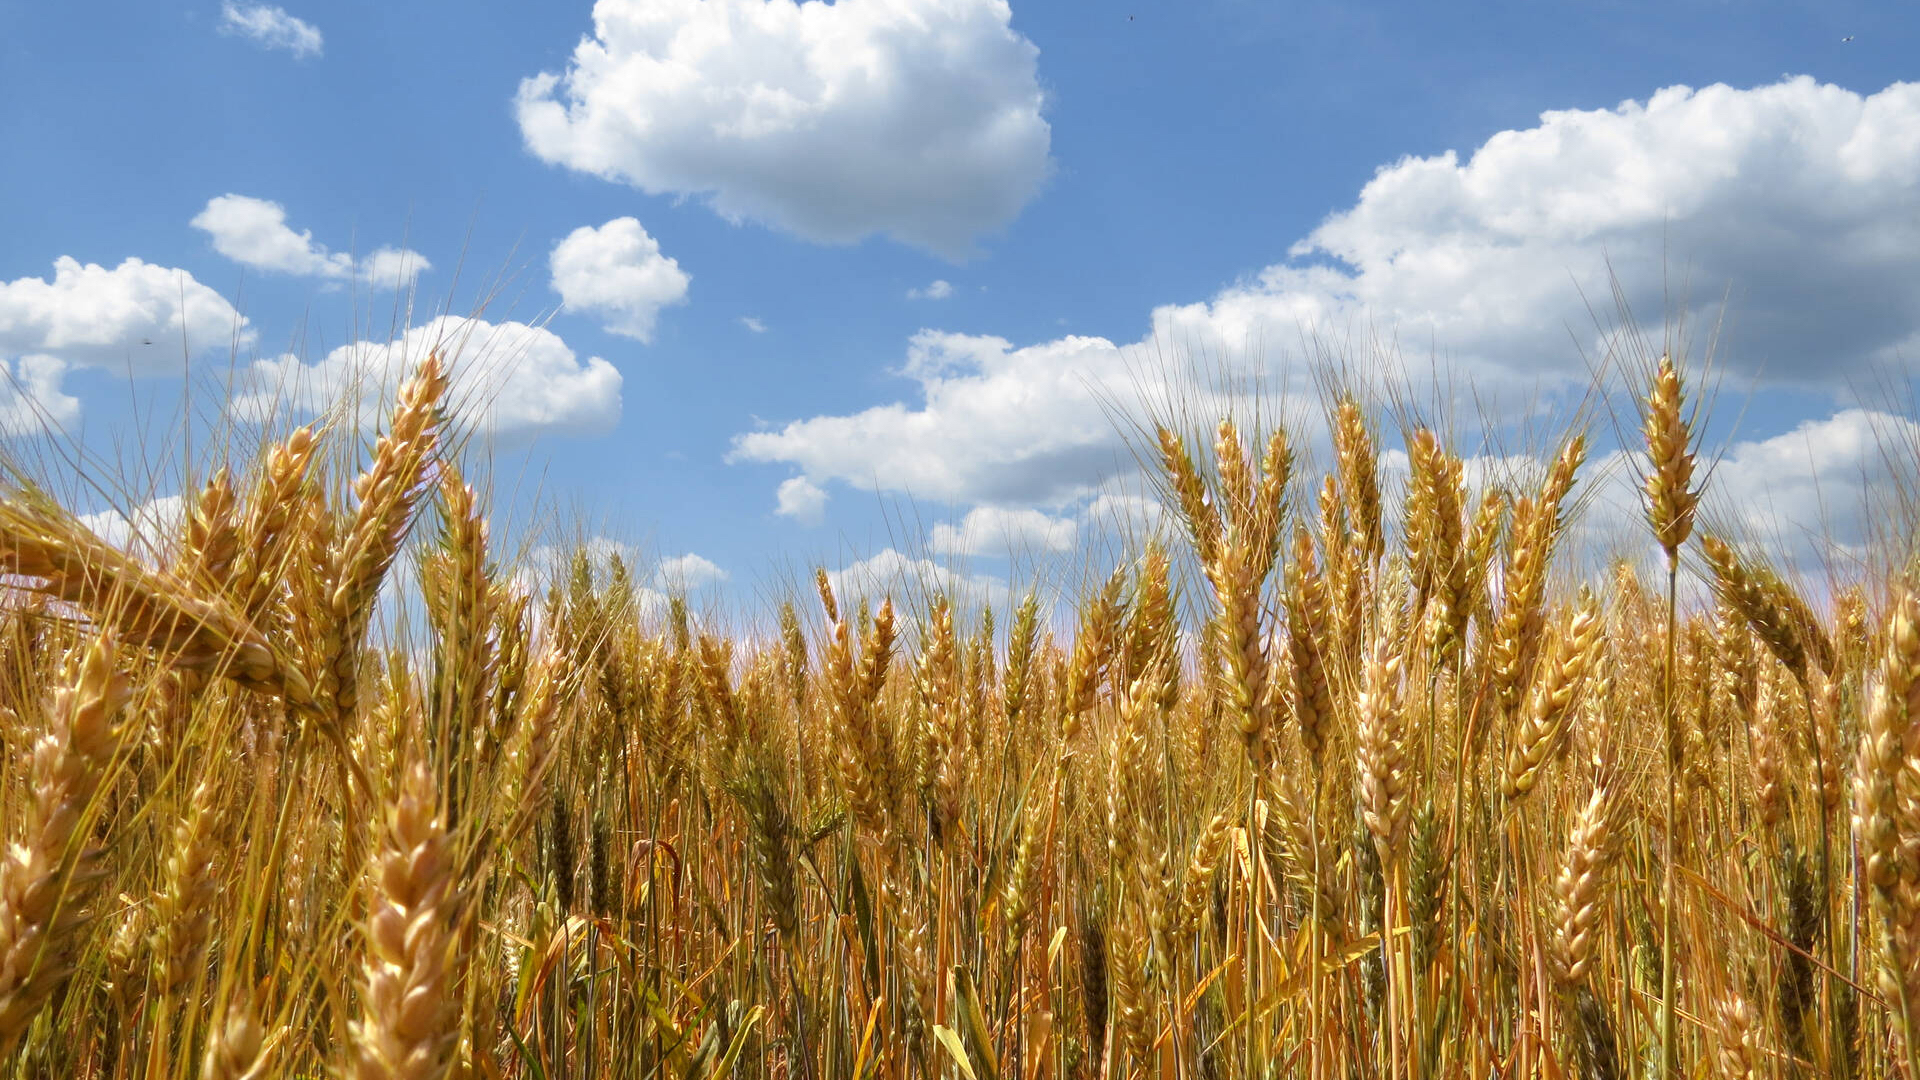 La production nationale des céréales au plus bas depuis 1981.